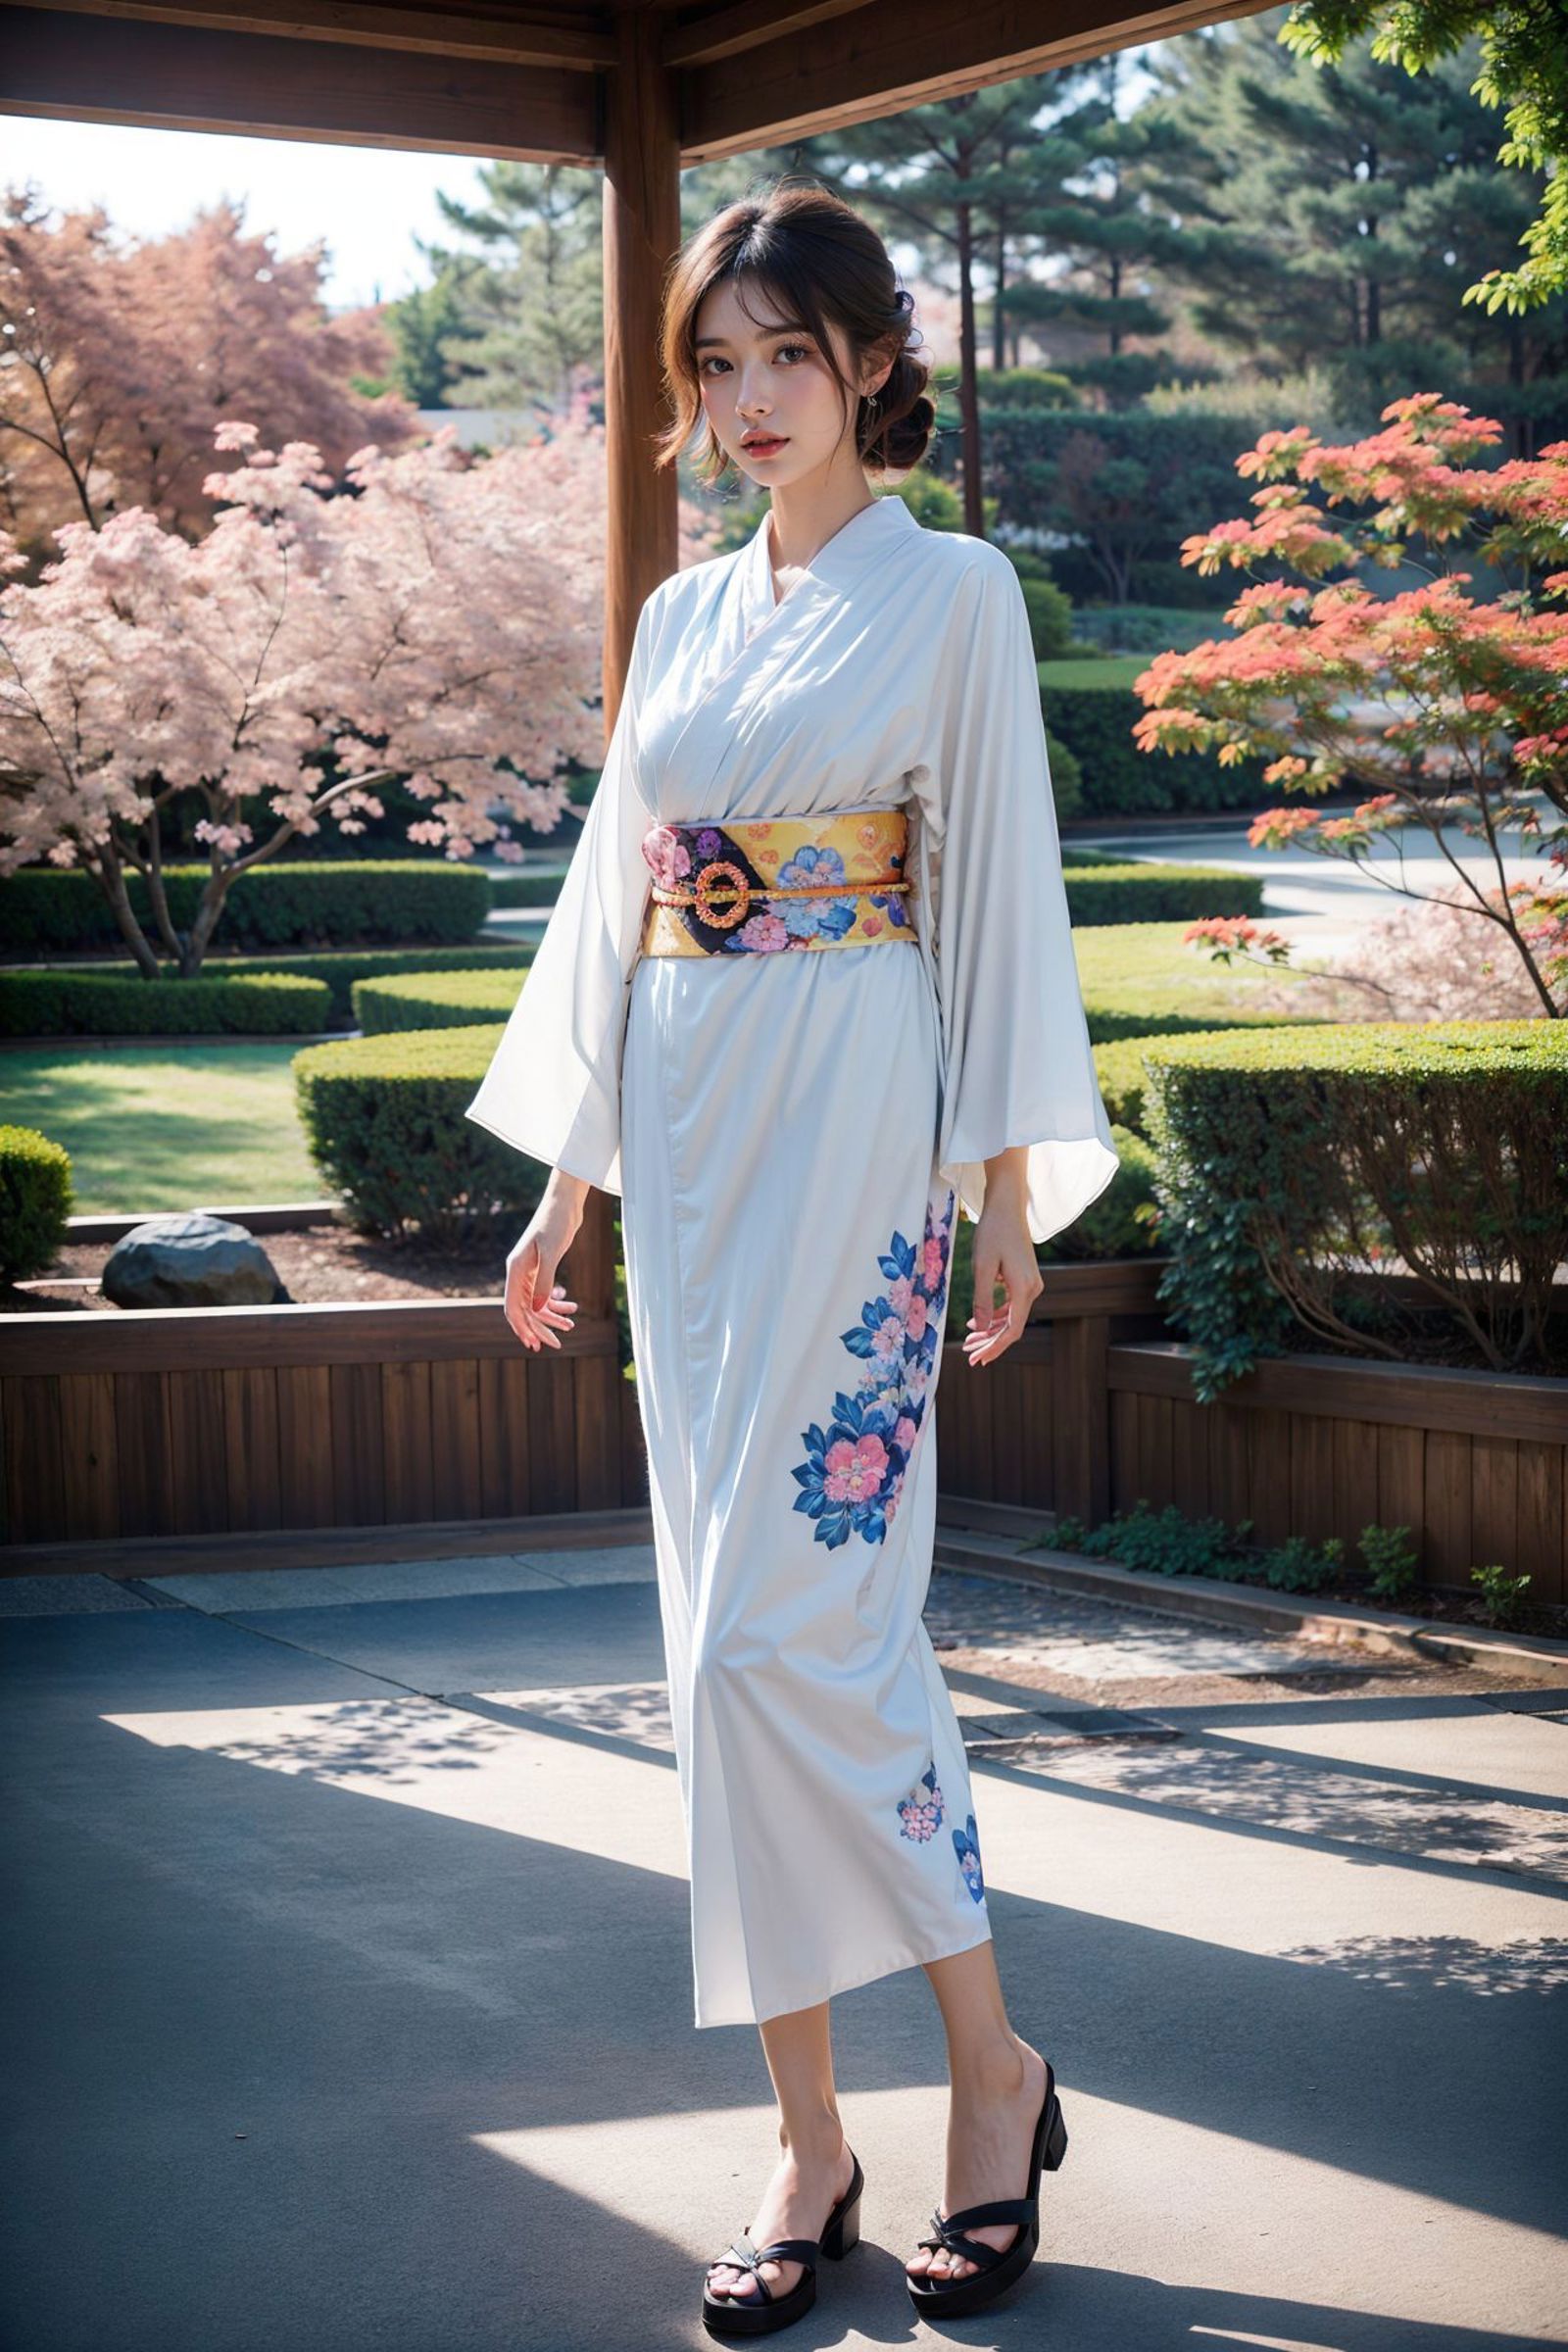 [Realistic&Anime] Kimono || 和服 image by Elysia_Saikou